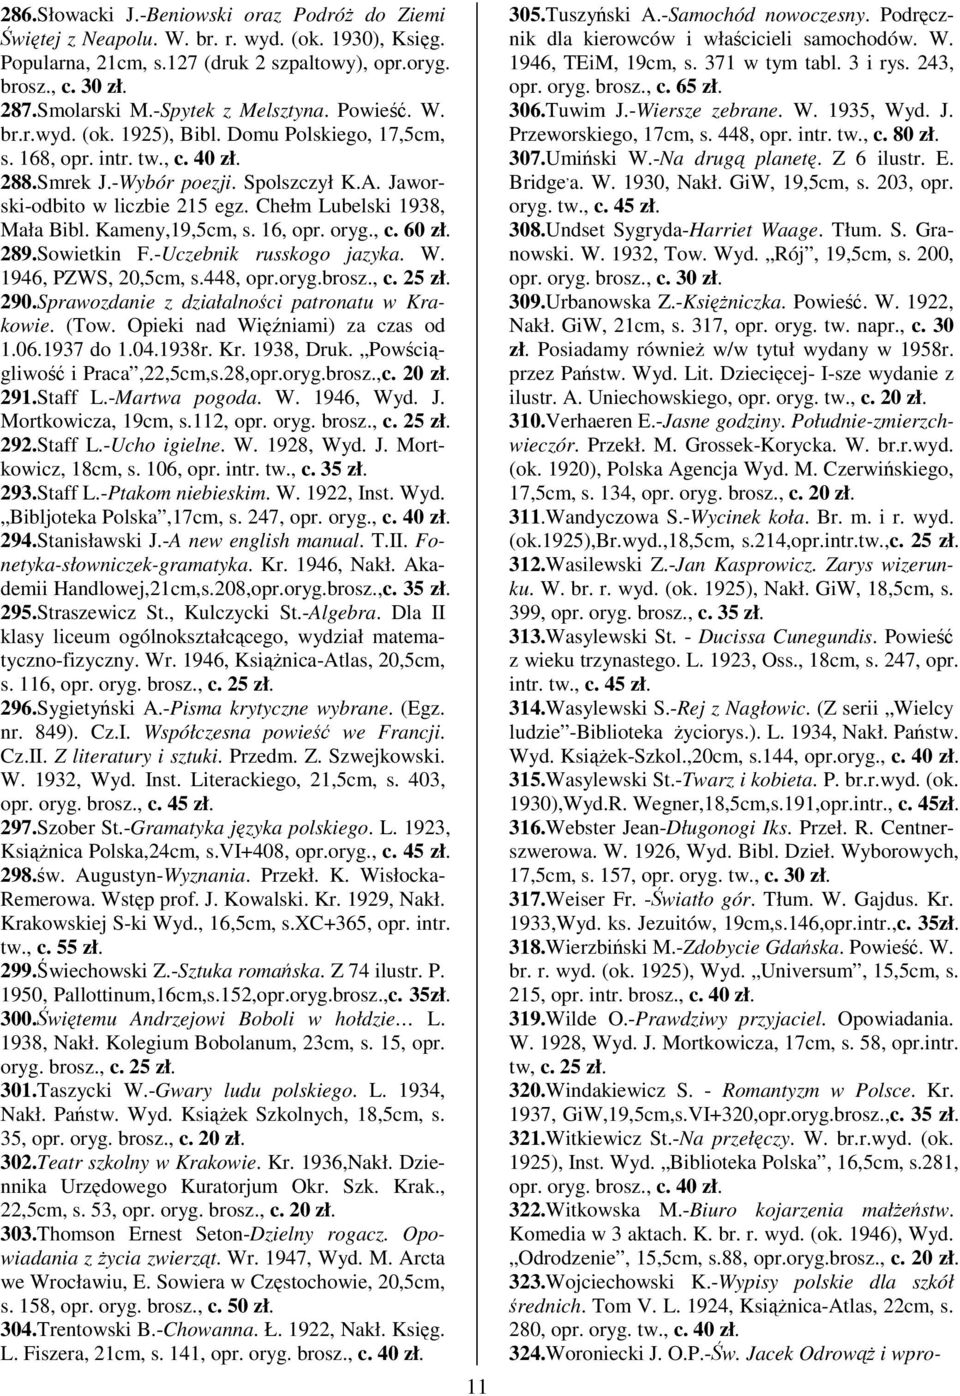 Chełm Lubelski 1938, Mała Bibl. Kameny,19,5cm, s. 16, opr. oryg., c. 60 zł. 289.Sowietkin F.-Uczebnik russkogo jazyka. W. 1946, PZWS, 20,5cm, s.448, opr.oryg.brosz., c. 25 zł. 290.